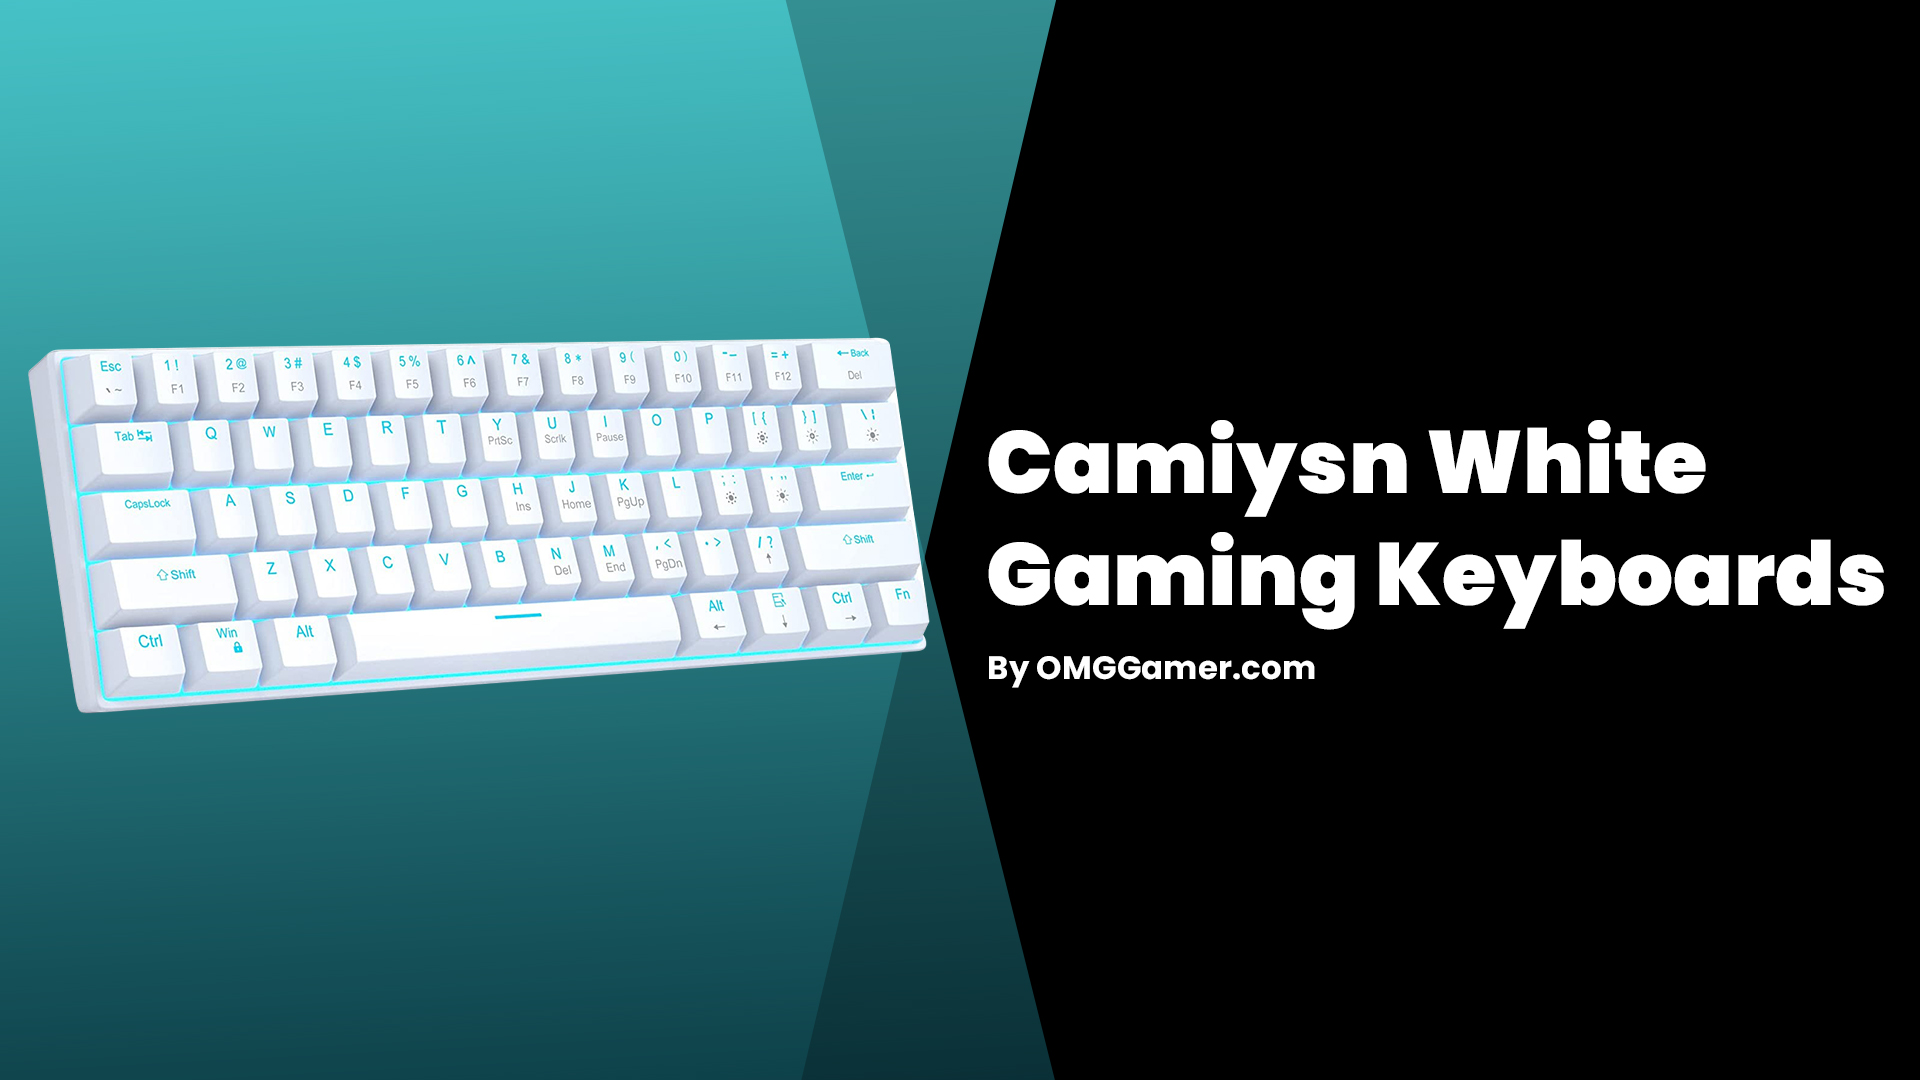 Camiysn White Gaming Keyboards